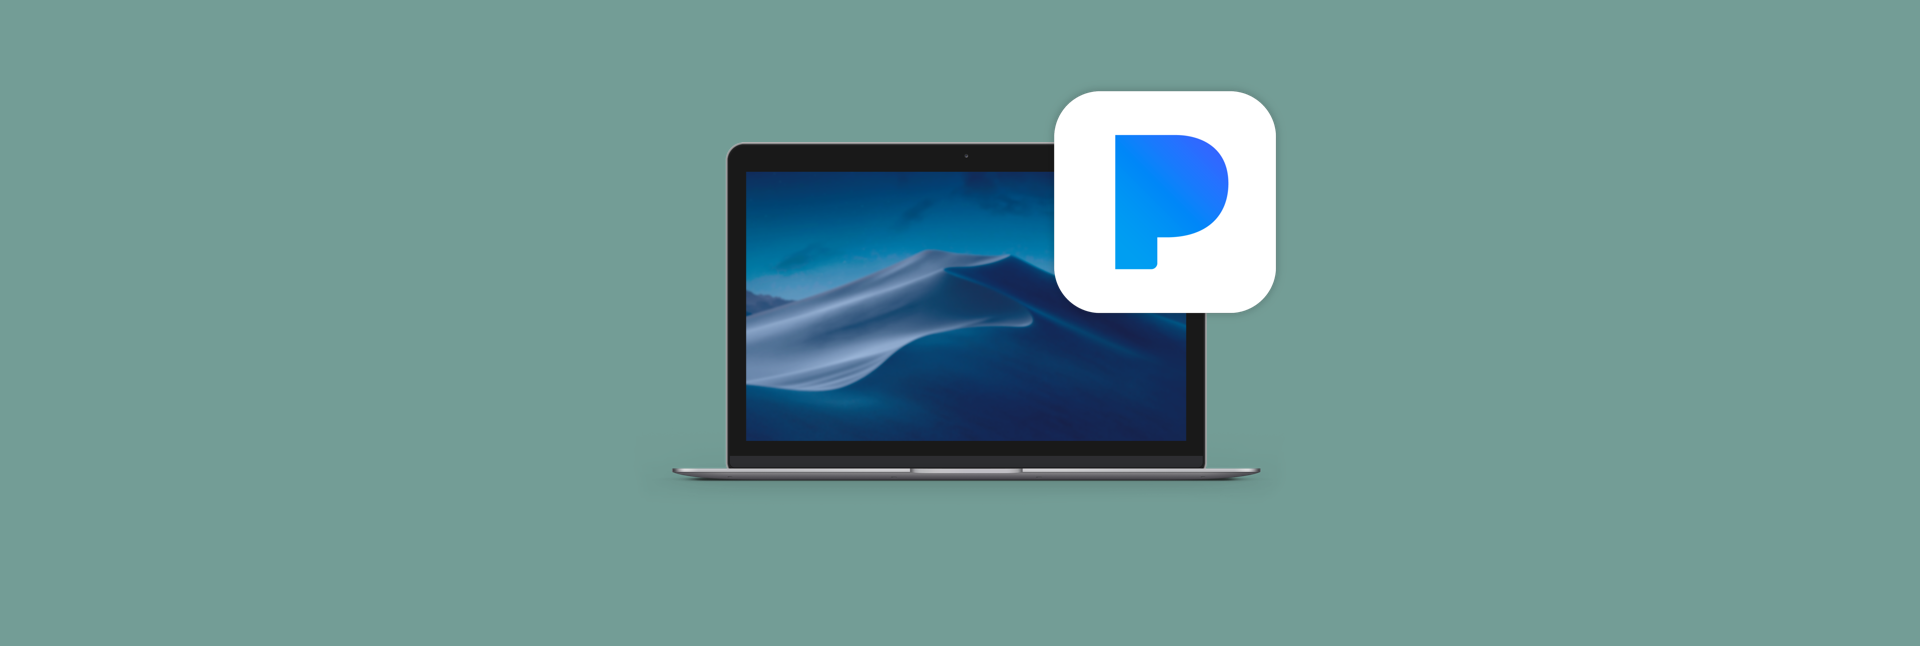 pandora for mac free